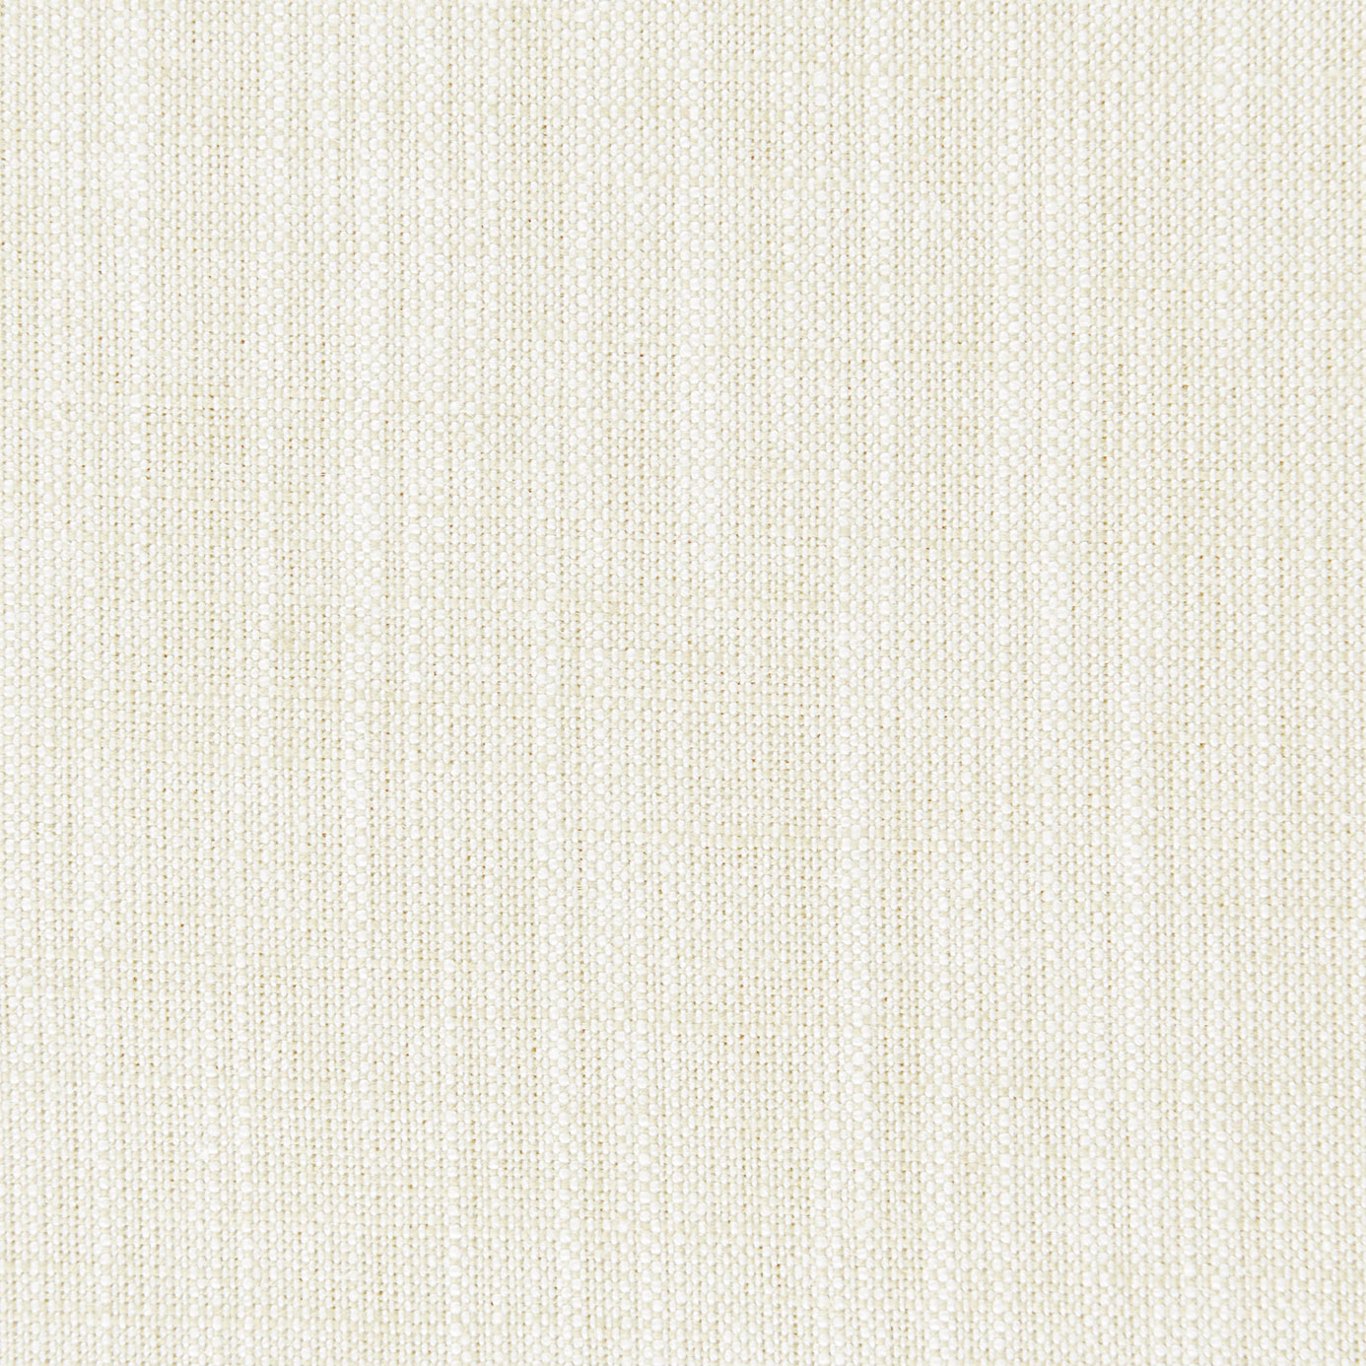 Biarritz Fabric by Clarke & Clarke - F0965/23 - Ivory